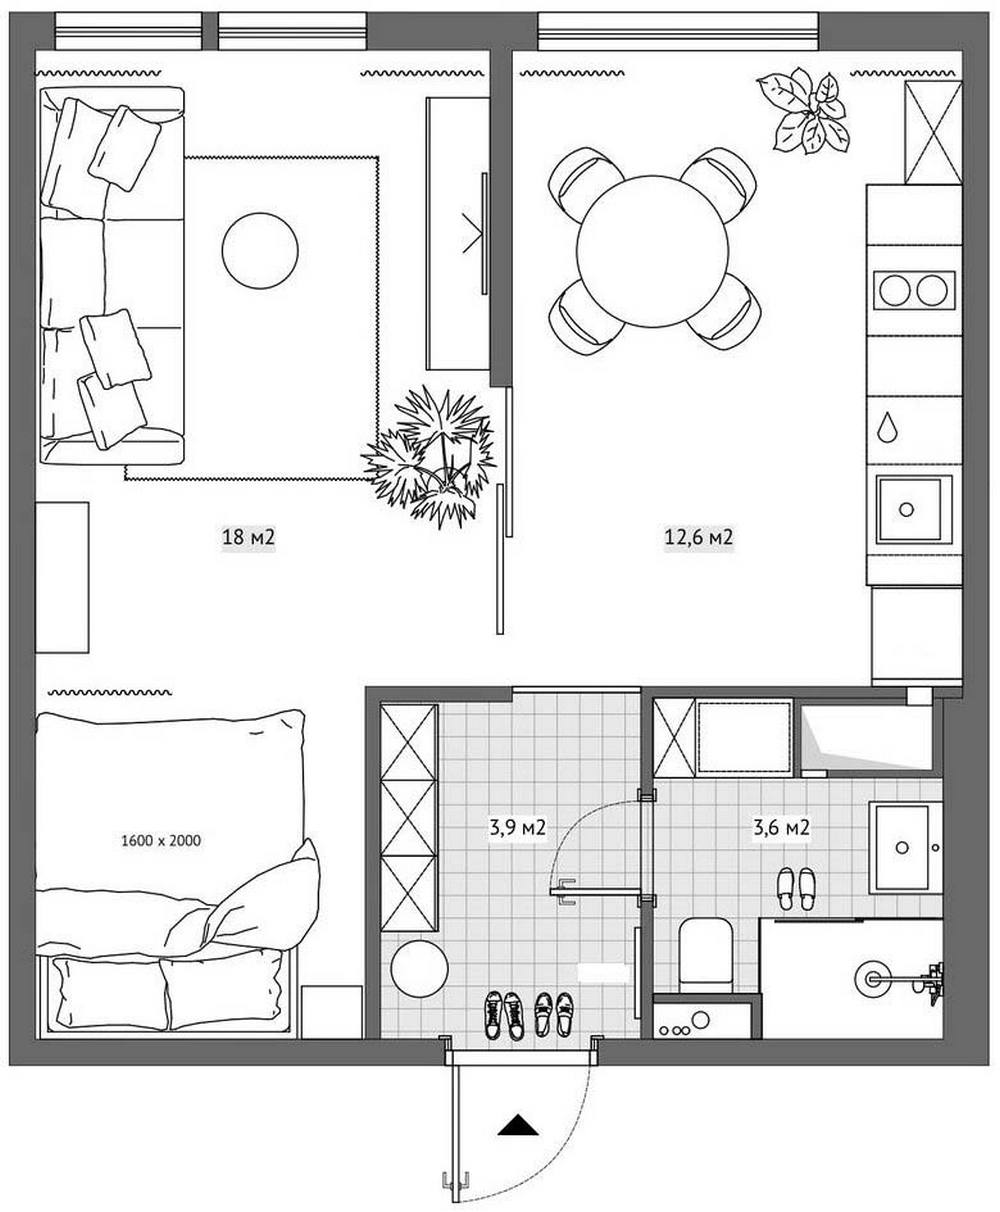 Sơ đồ thiết kế căn hộ diện tích 38m² của cặp vợ chồng son do NTK Nina Ivanenko cung cấp.